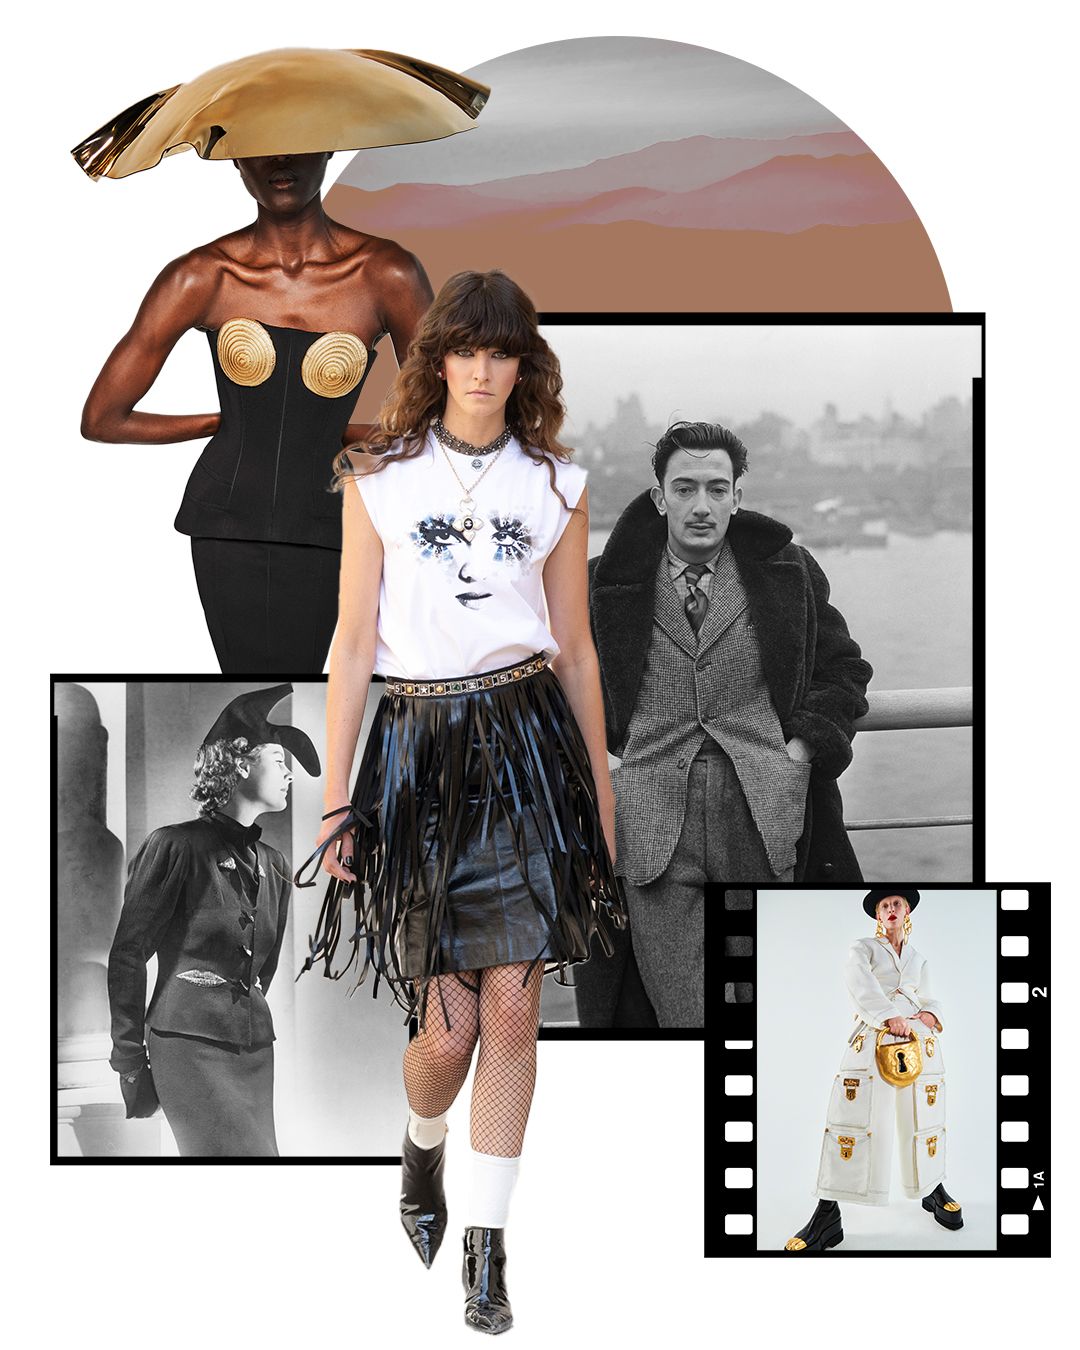 シュルレアリスム」がファッショントレンドに、100年の時を超えて復活